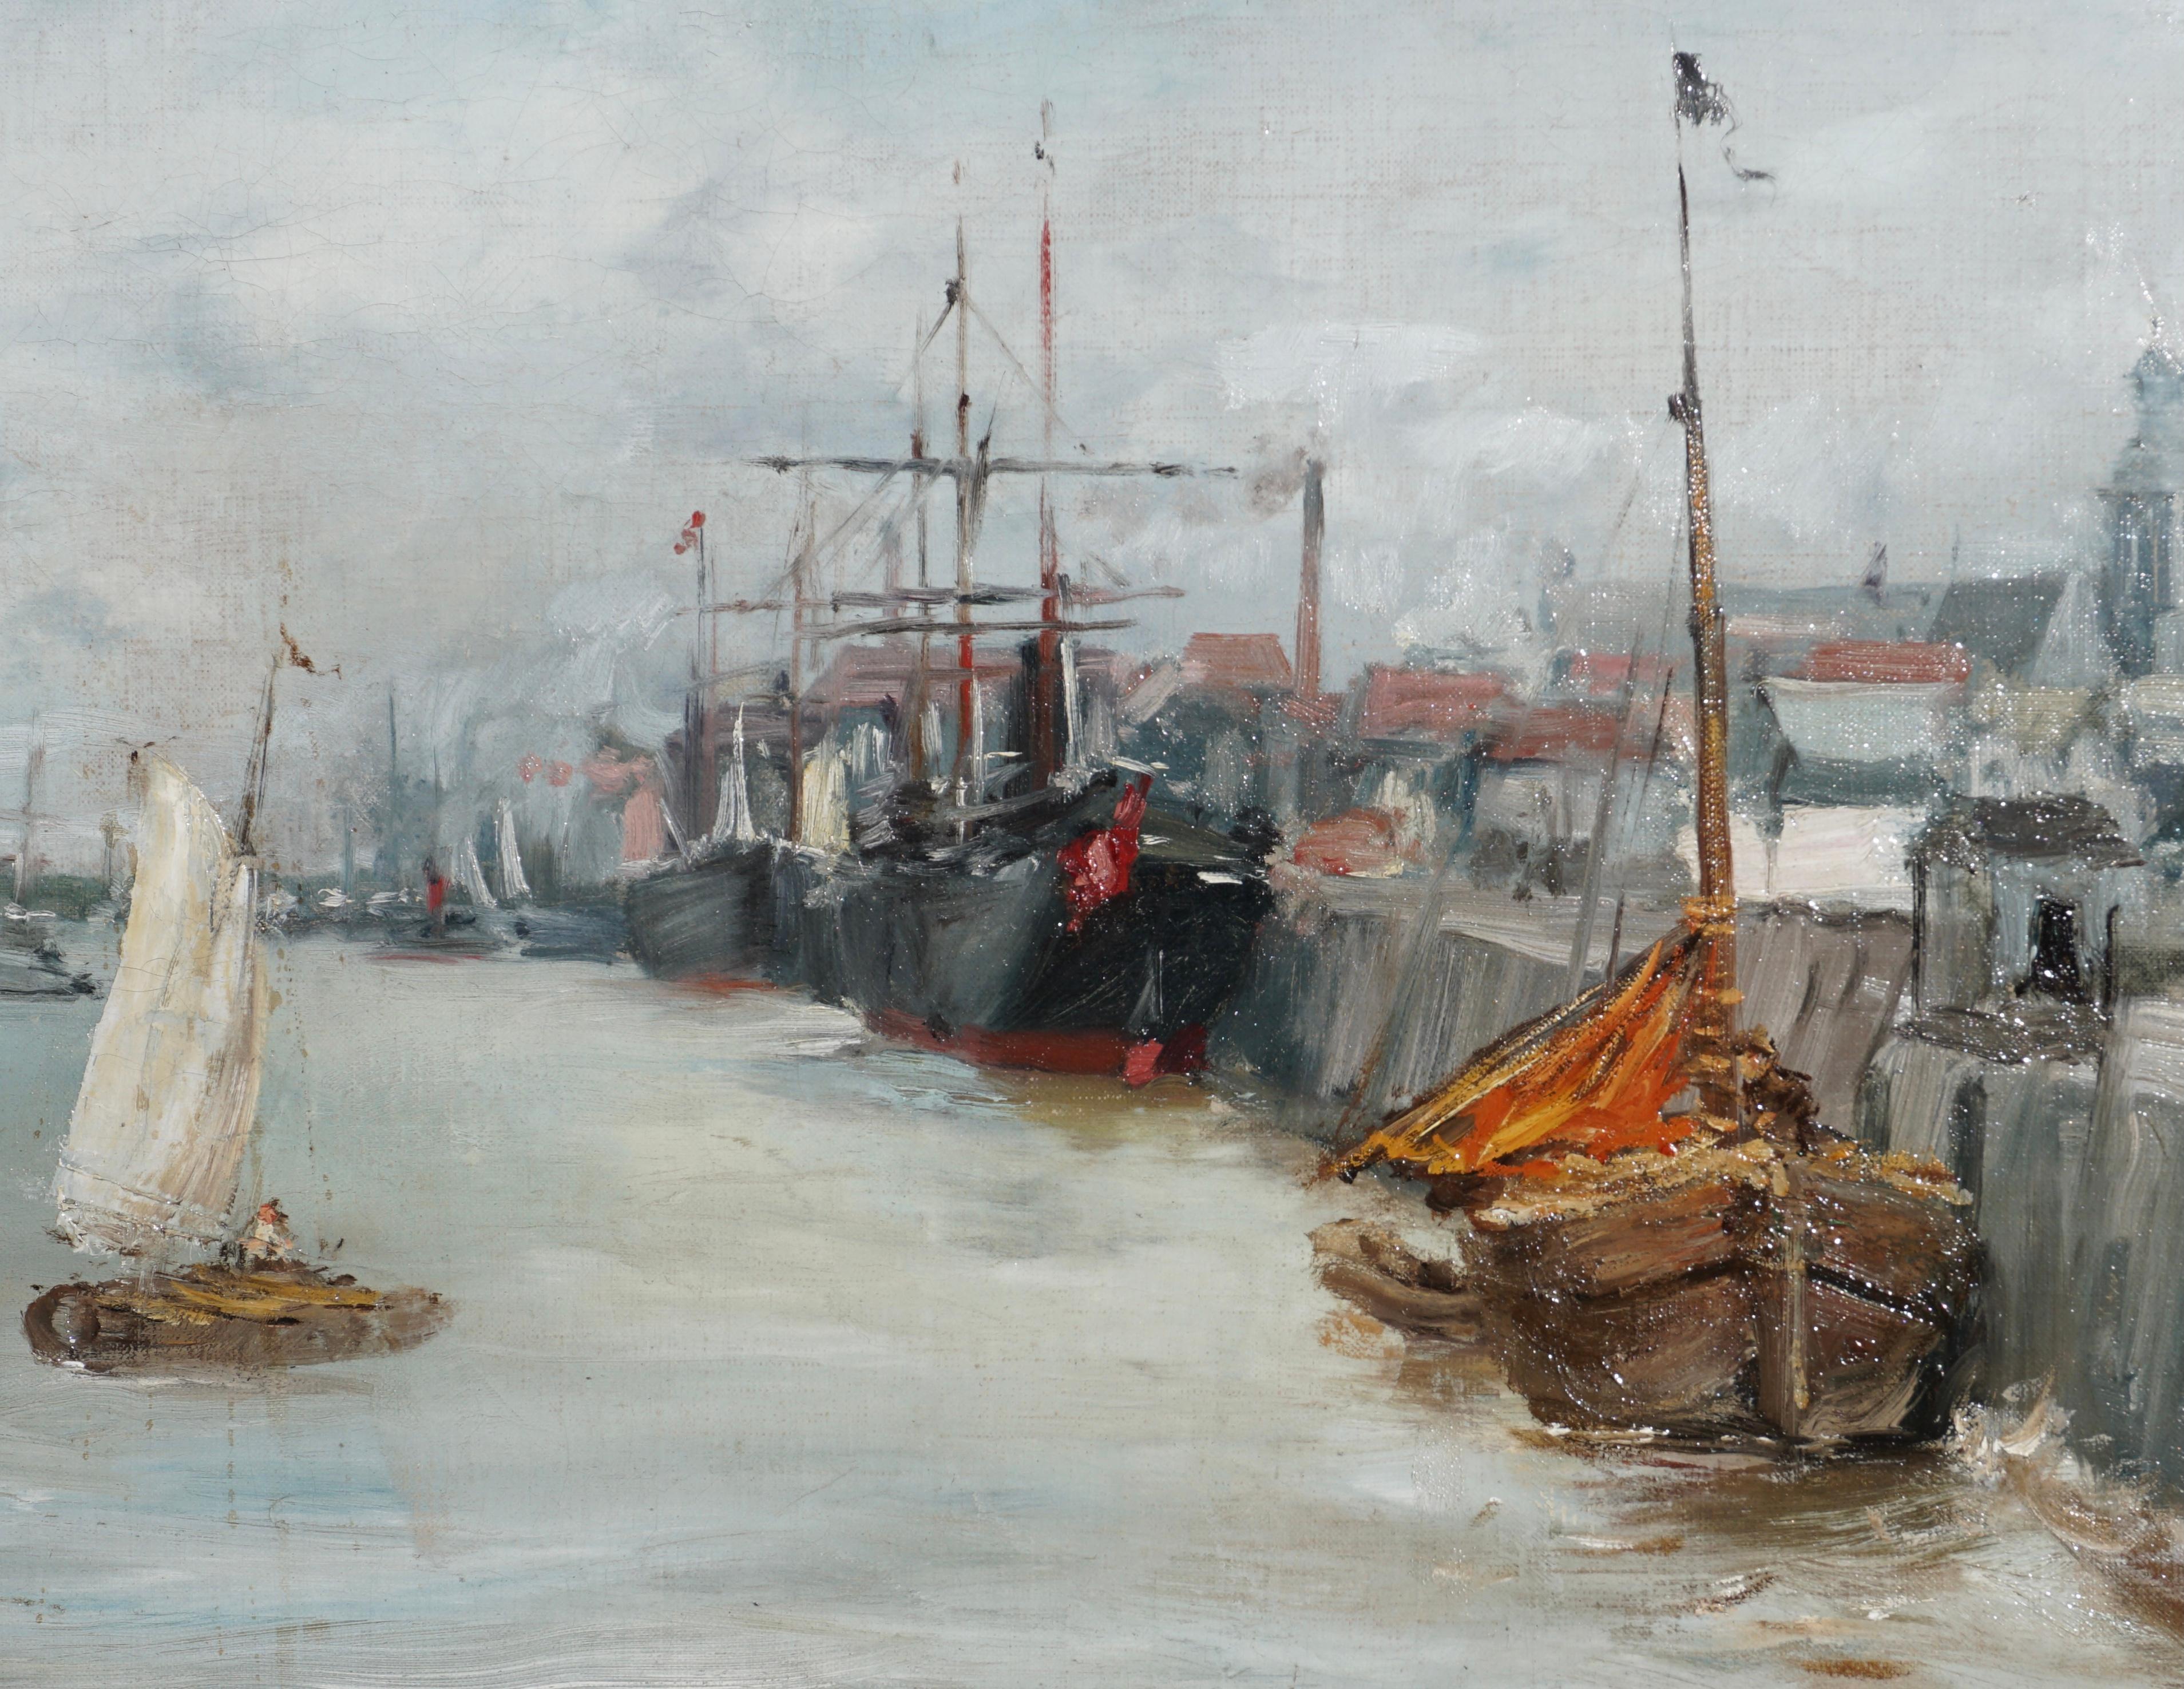 William Merritt Chase “Port Of Antwerp” Oil Painting For Sale 1